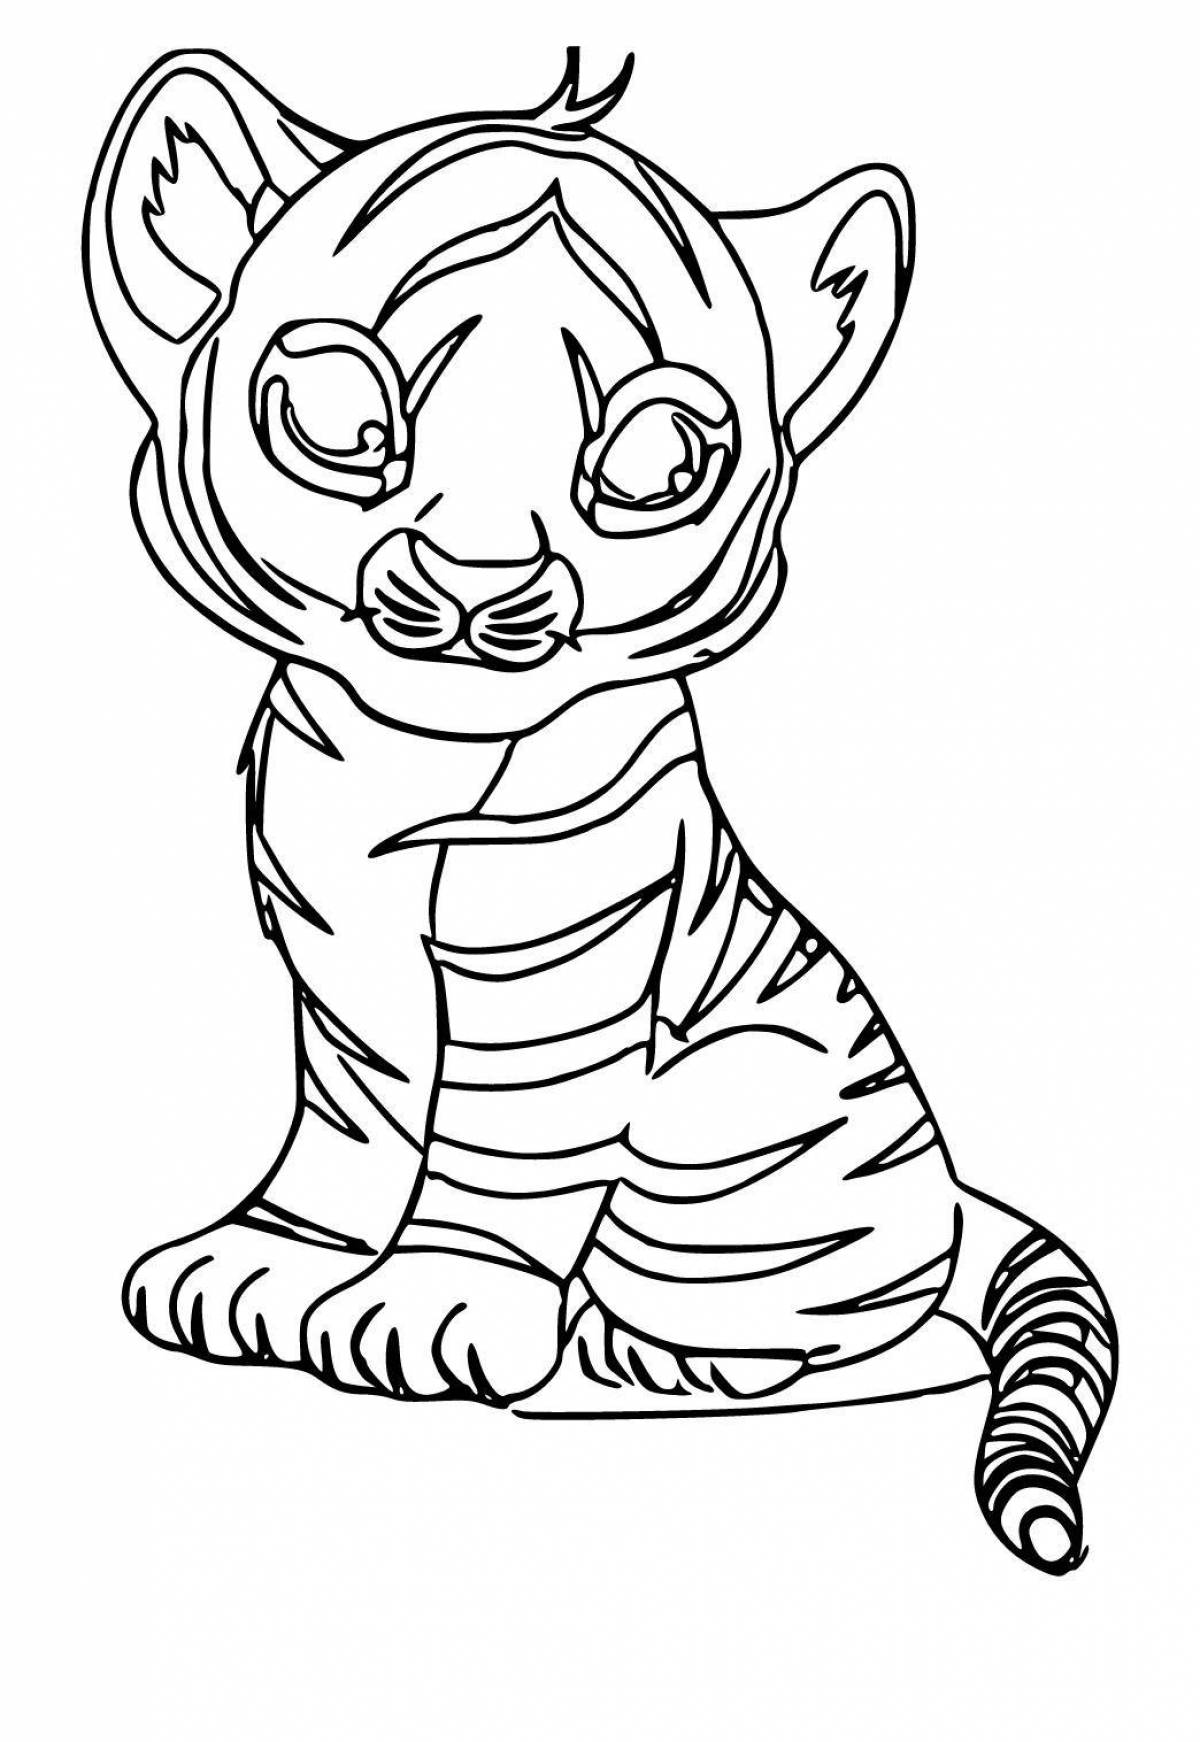 Интригующая раскраска тигра для детей 3-4 лет